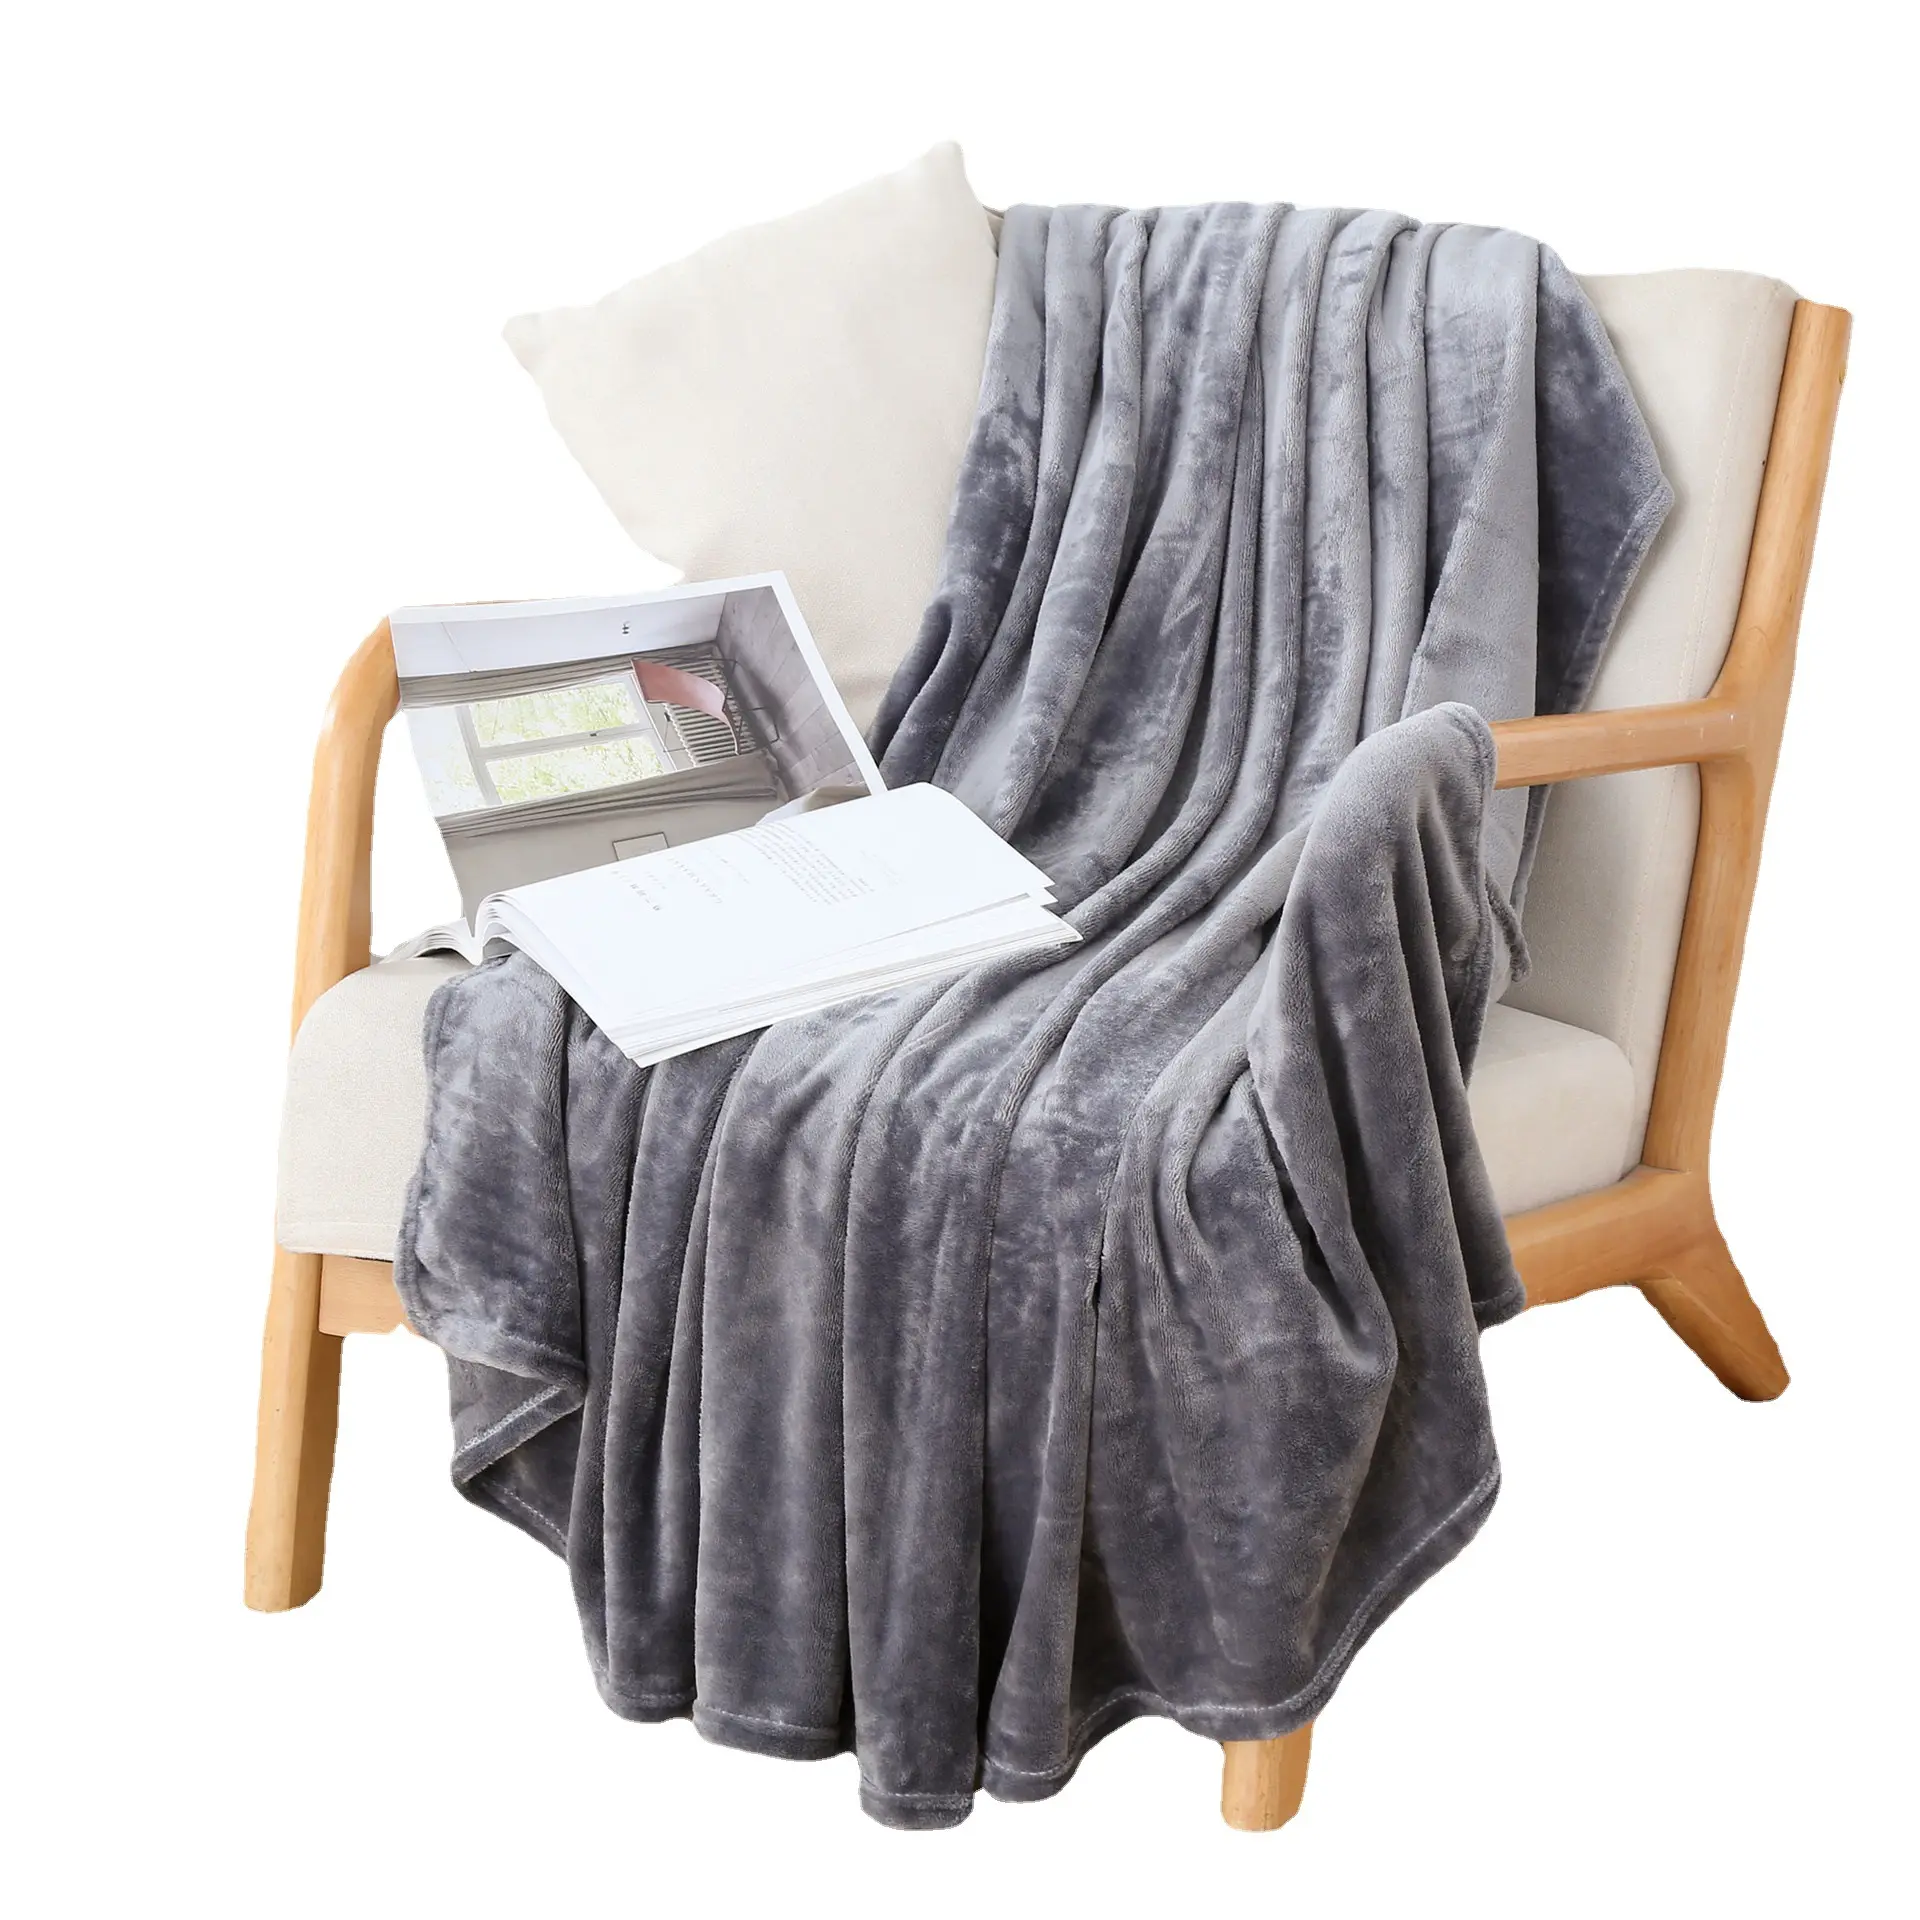 Manta de franela de lavado mecánico fina y ligera a cuadros mantas suaves súper cálidas sofá/cama/colcha de viaje